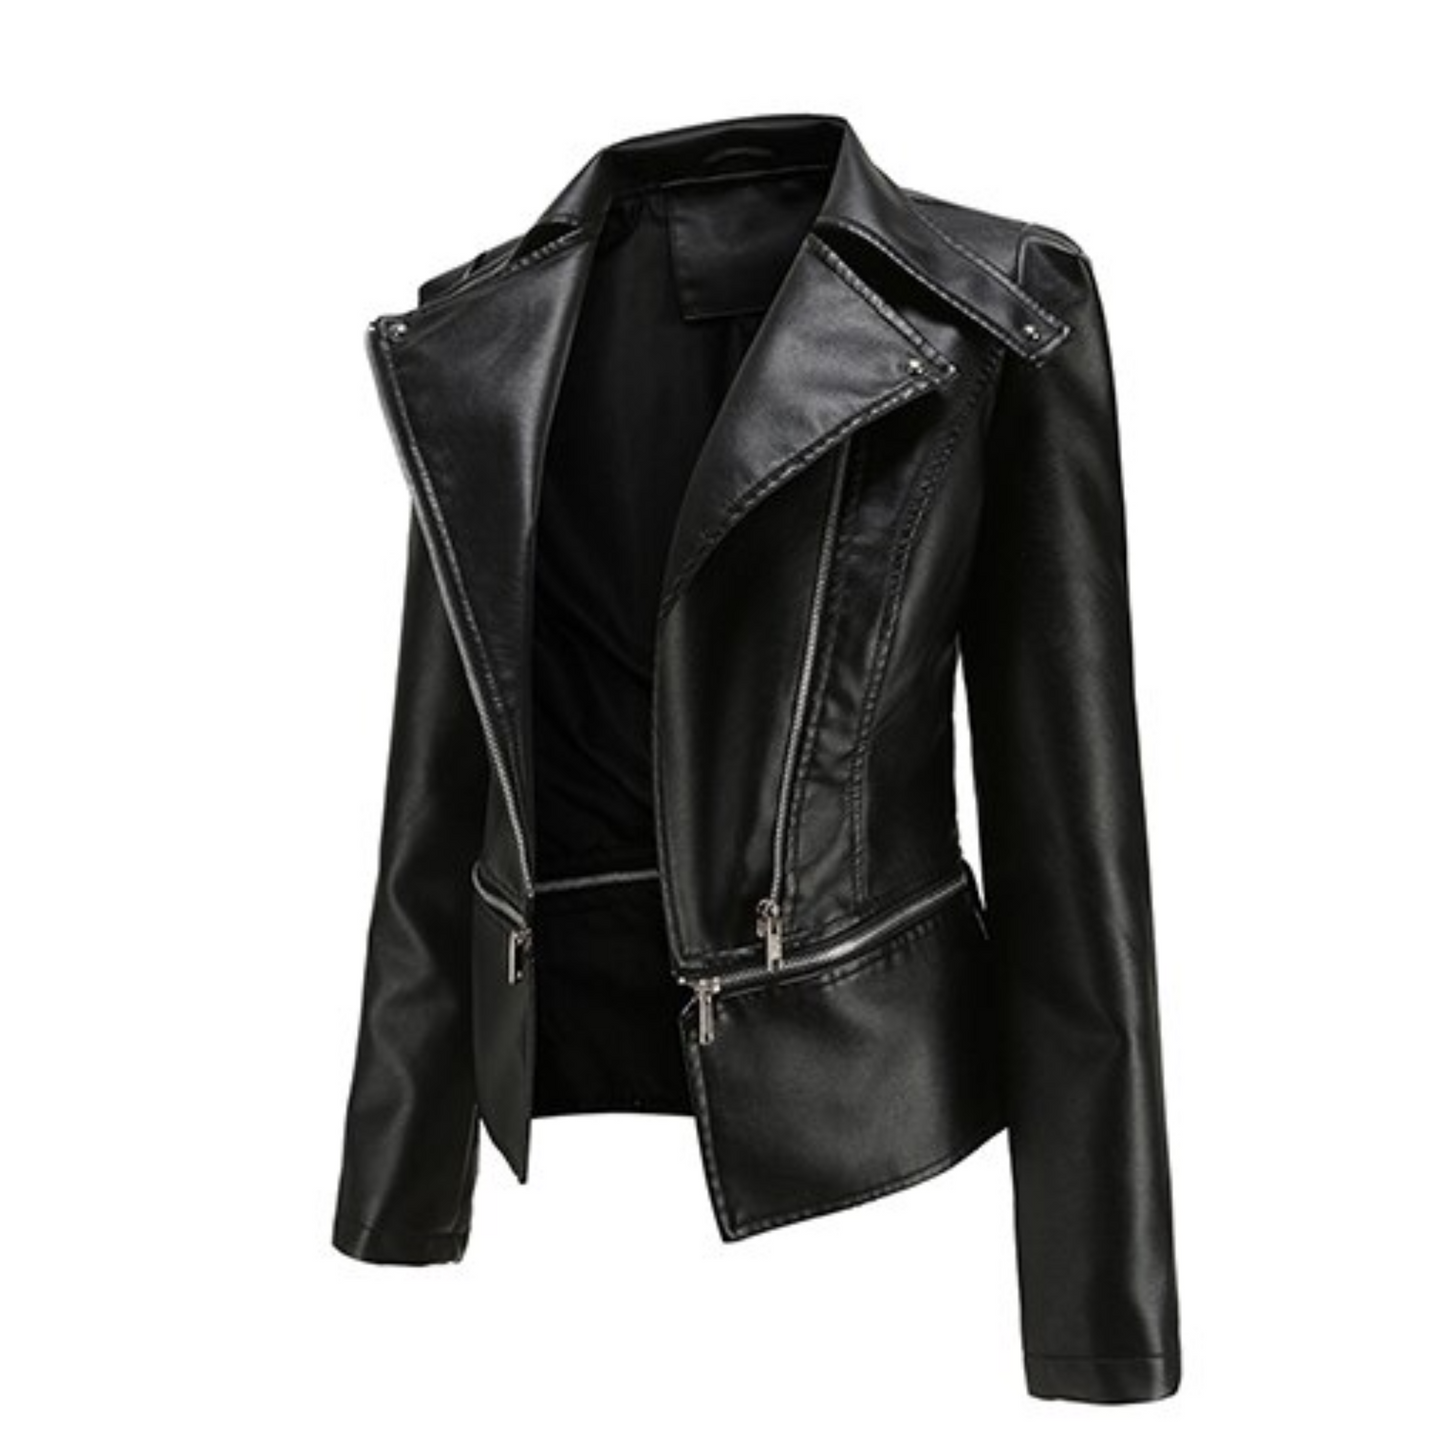 Cici - Black PU Leather Adjustable Length Jacket